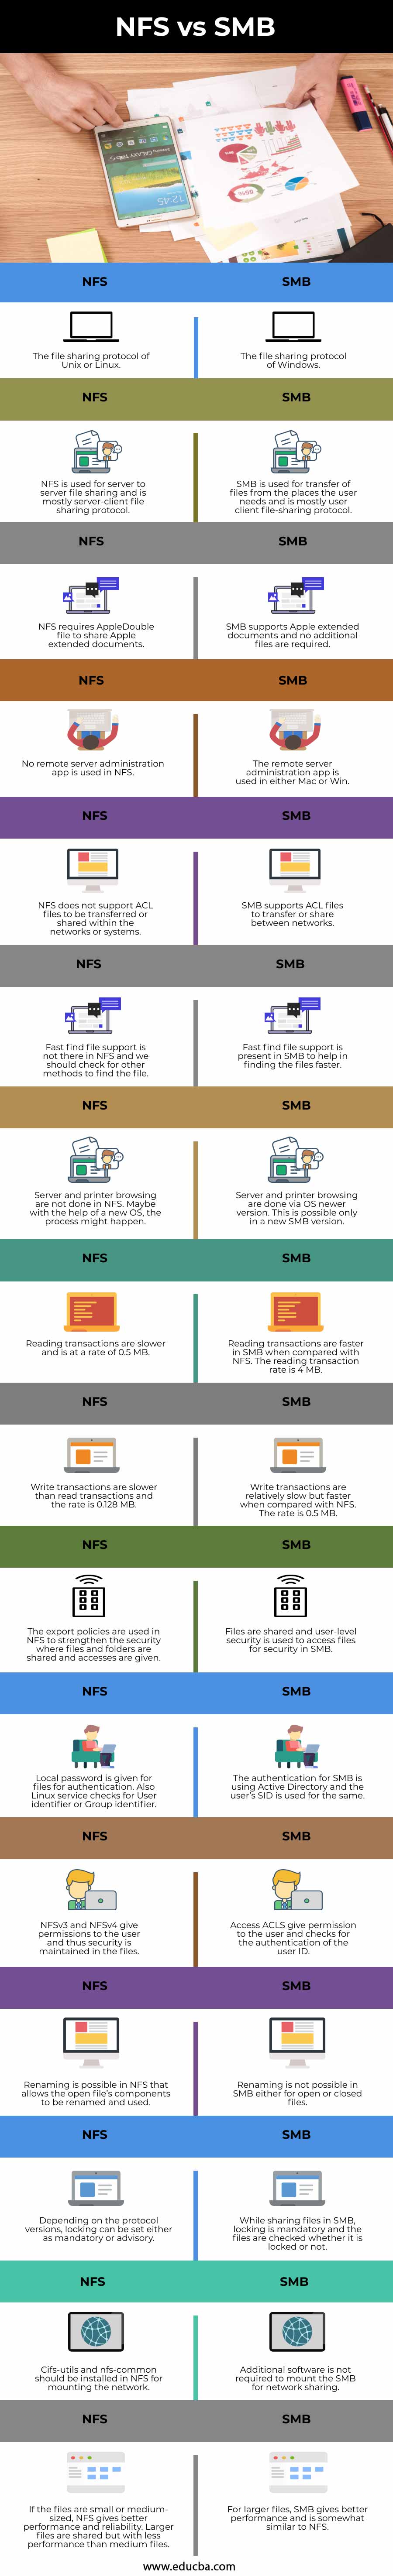 NFS-vs-SMB-info